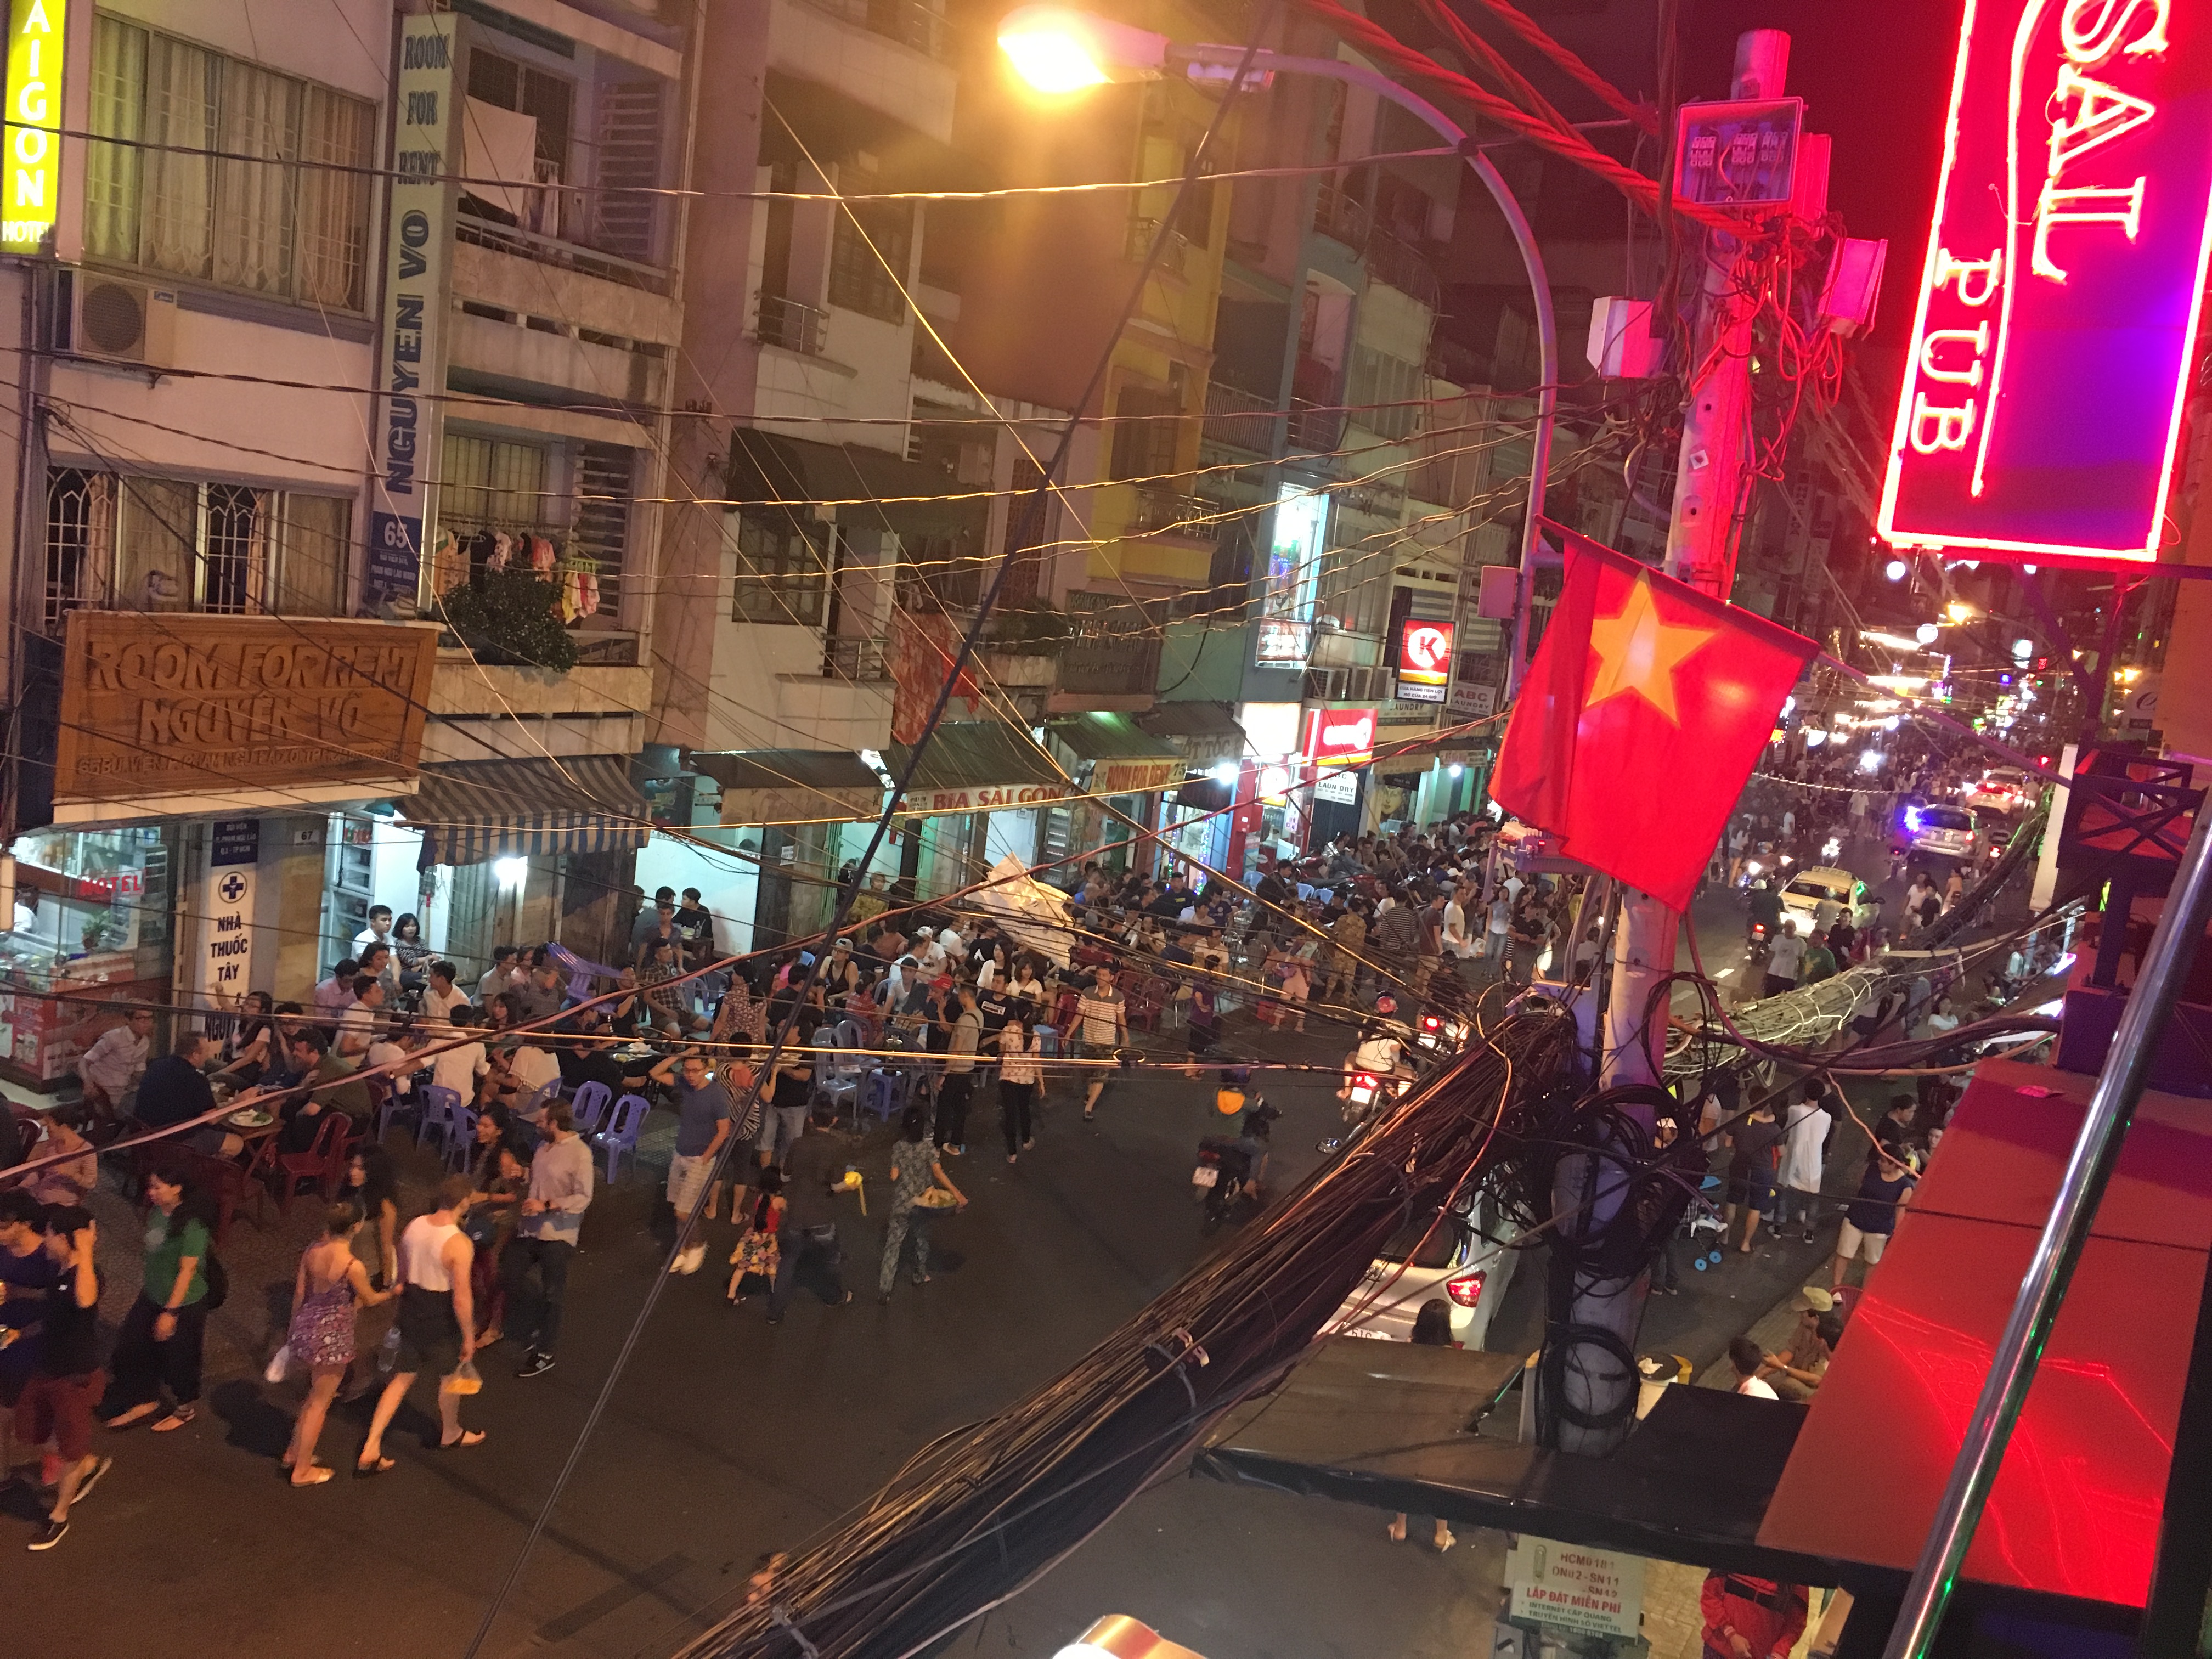 Bui Vien Street in Ho Chi Minh City, Vietnam.